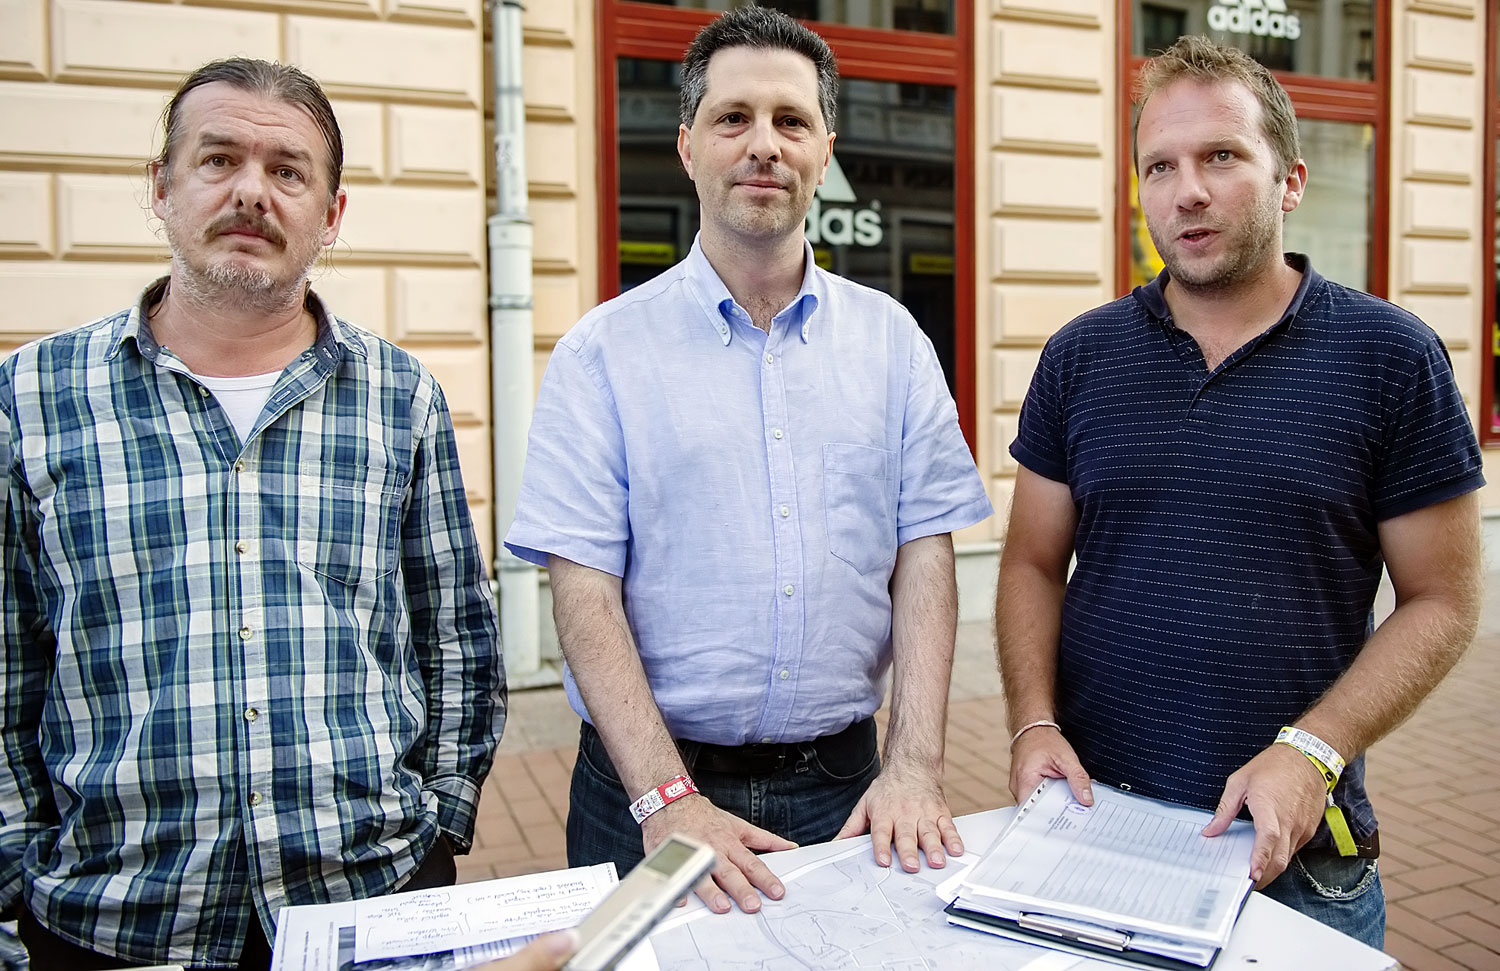 Málovics György, Schiffer András és Szentistványi István tavaly augusztusban Szegeden